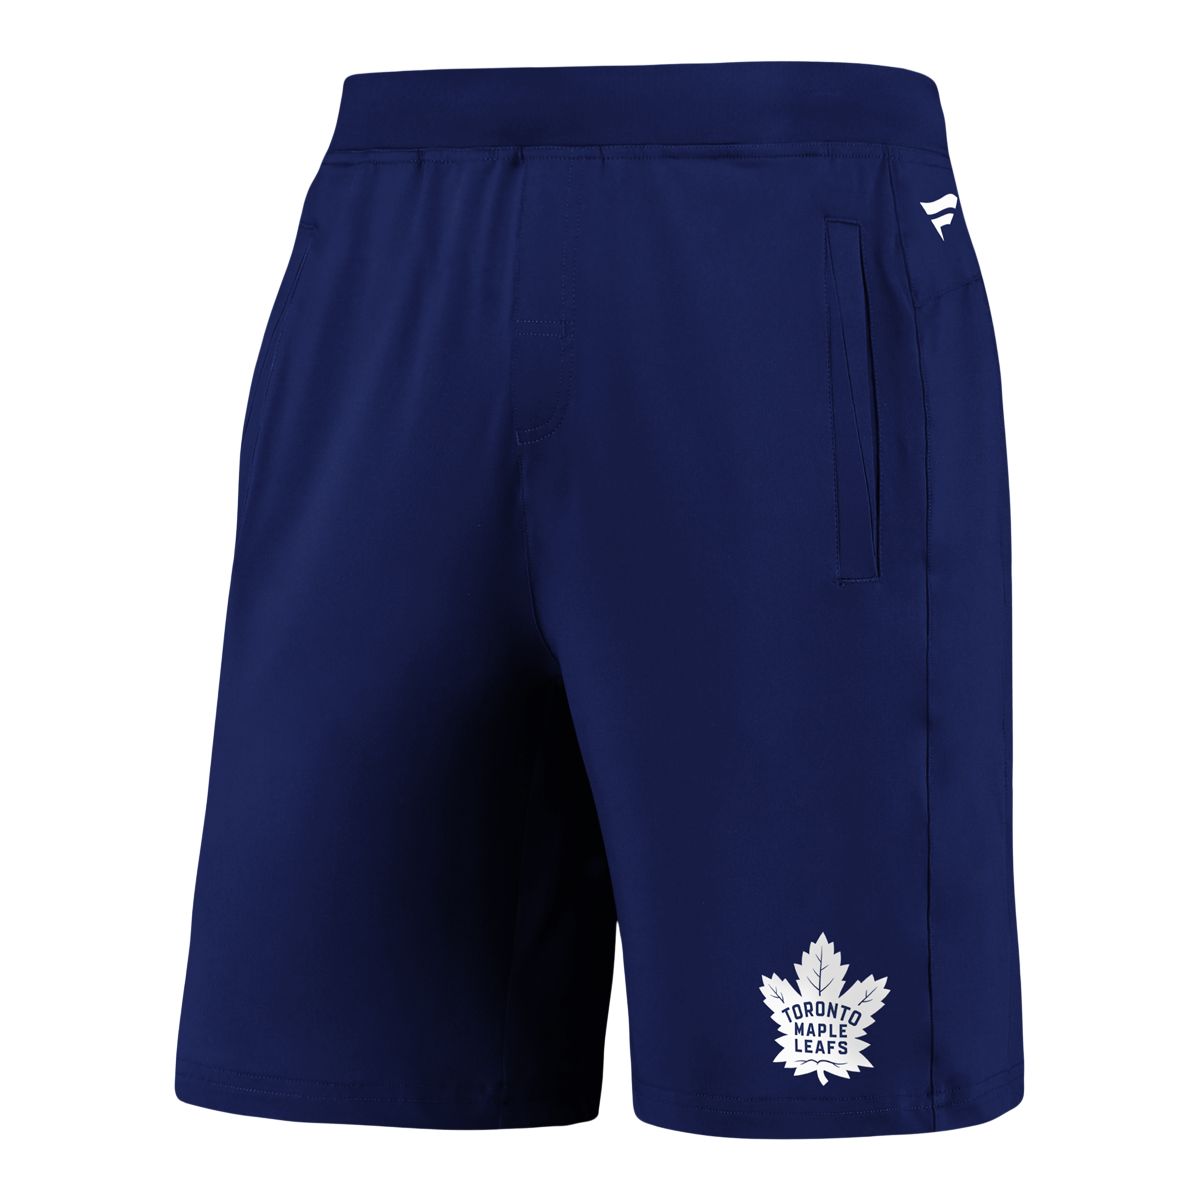 Sports - Fan Gear - Shorts, Pants & Bottoms - NHL Toronto Maple